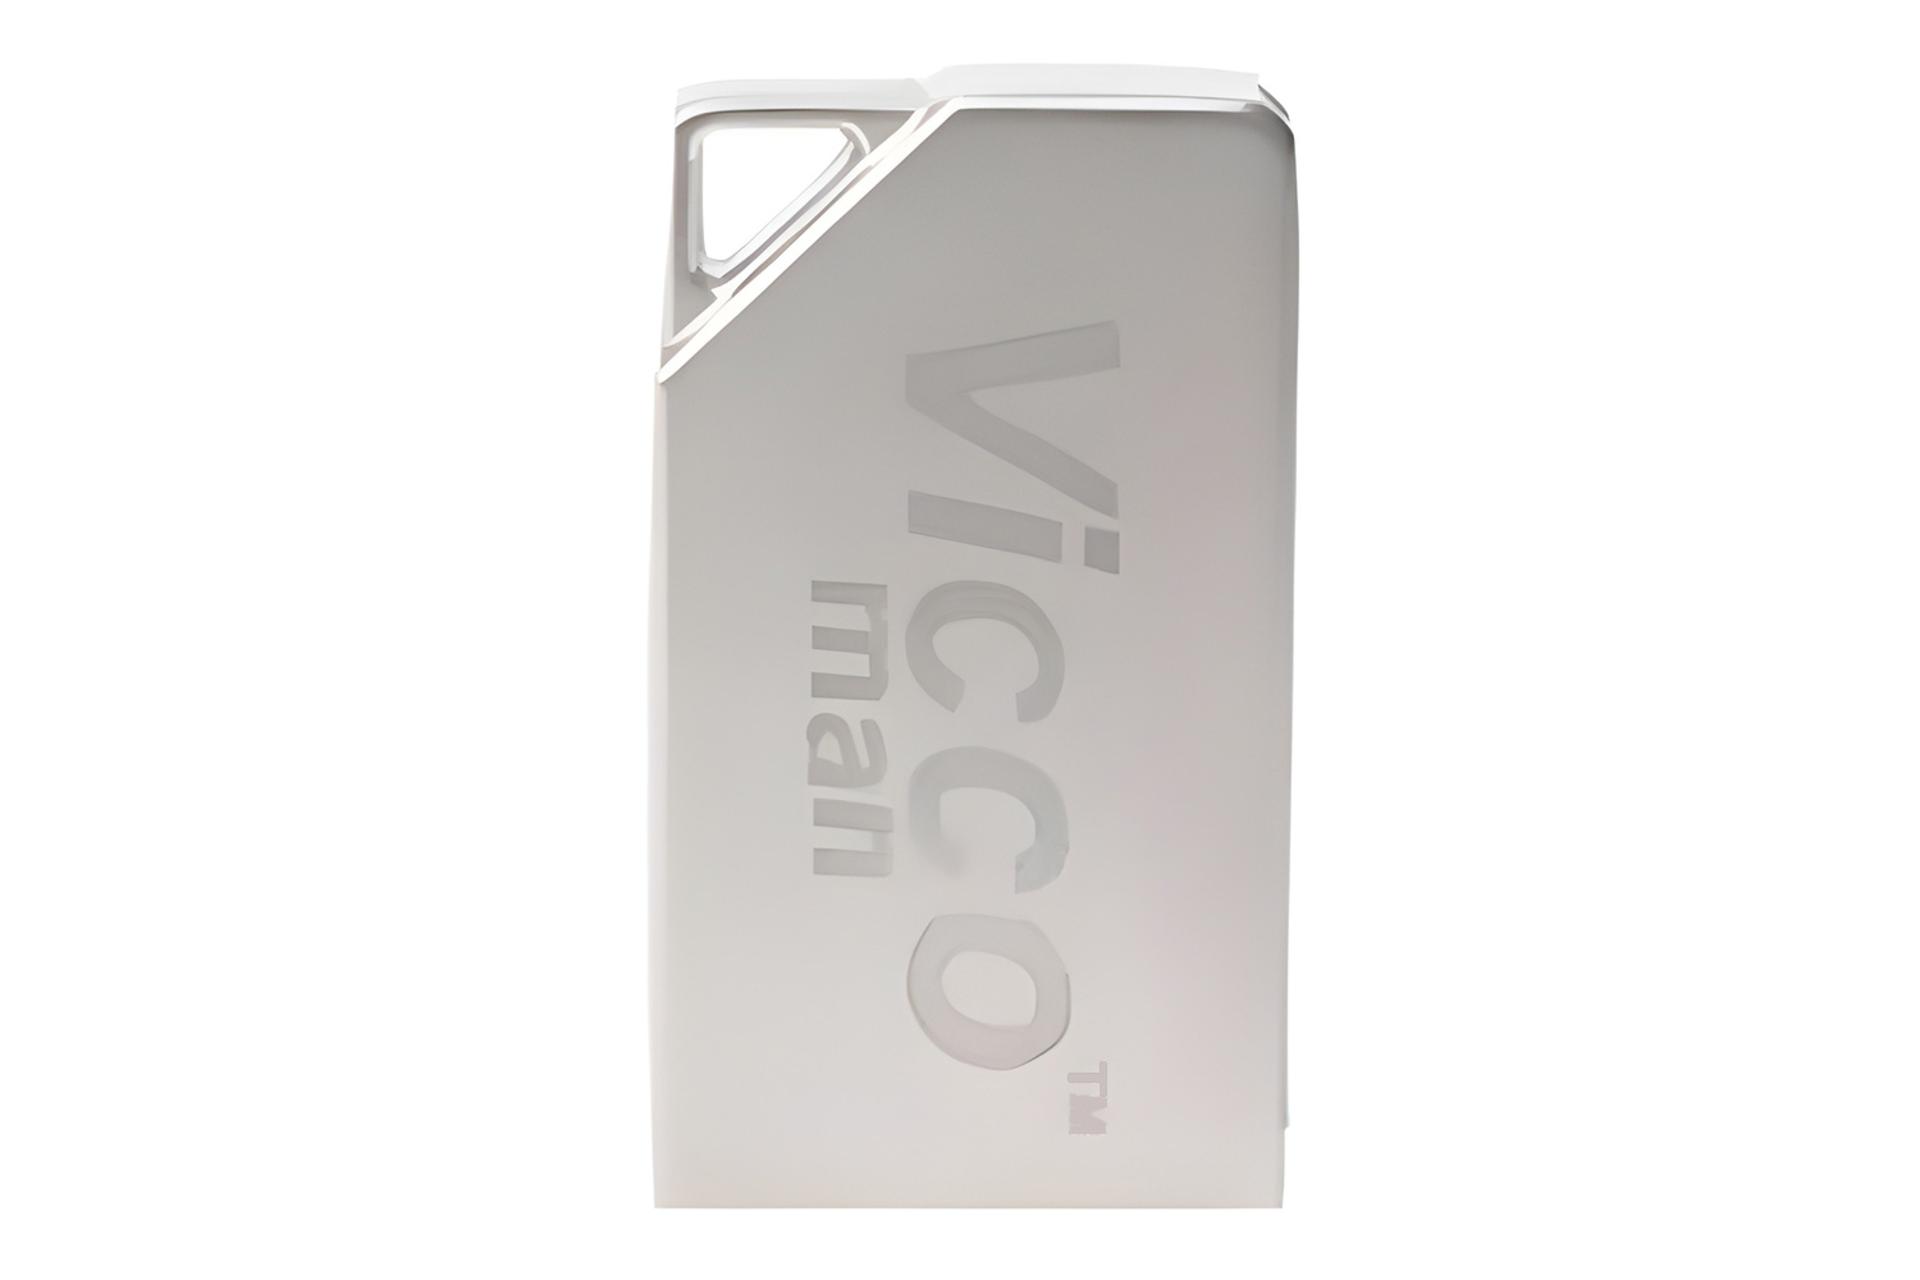 فلش مموری ویکومن Viccoman VC375 G 64GB